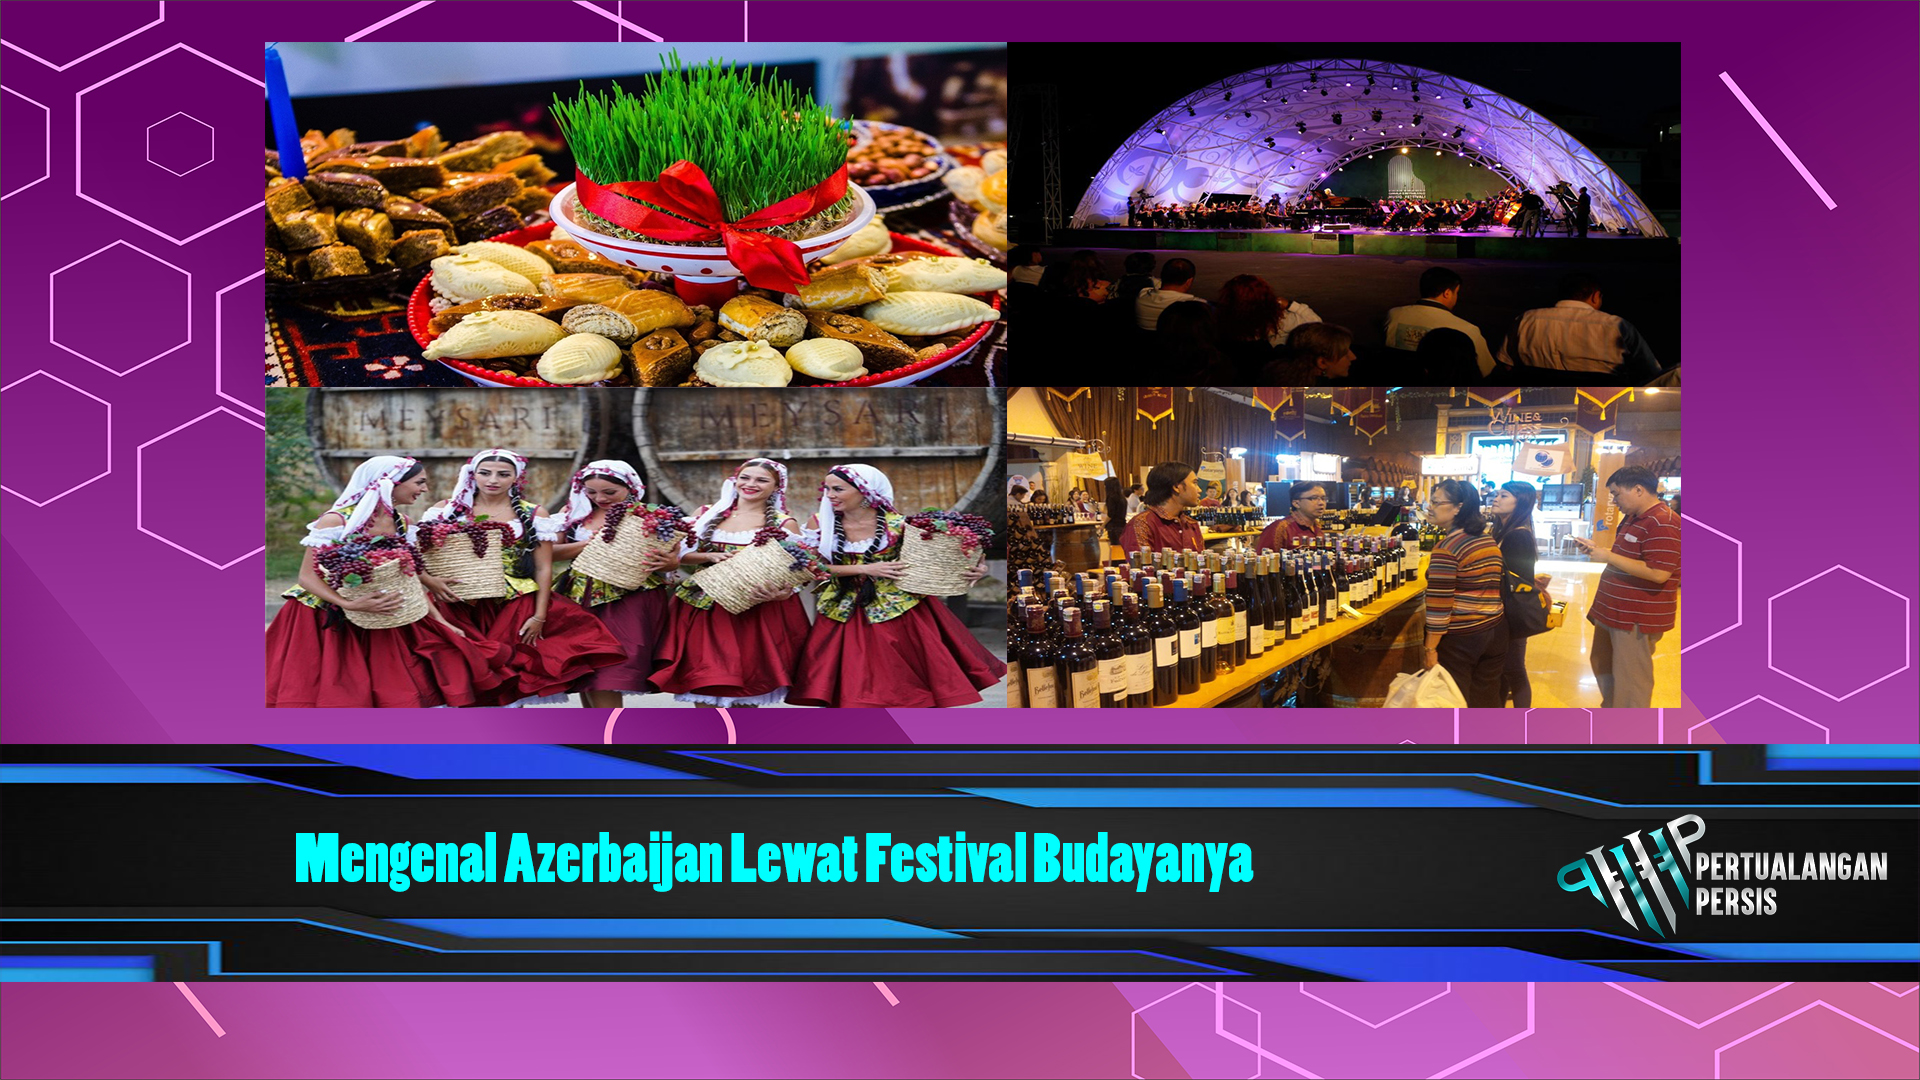 Mengenal Azerbaijan Lewat Festival Budayanya